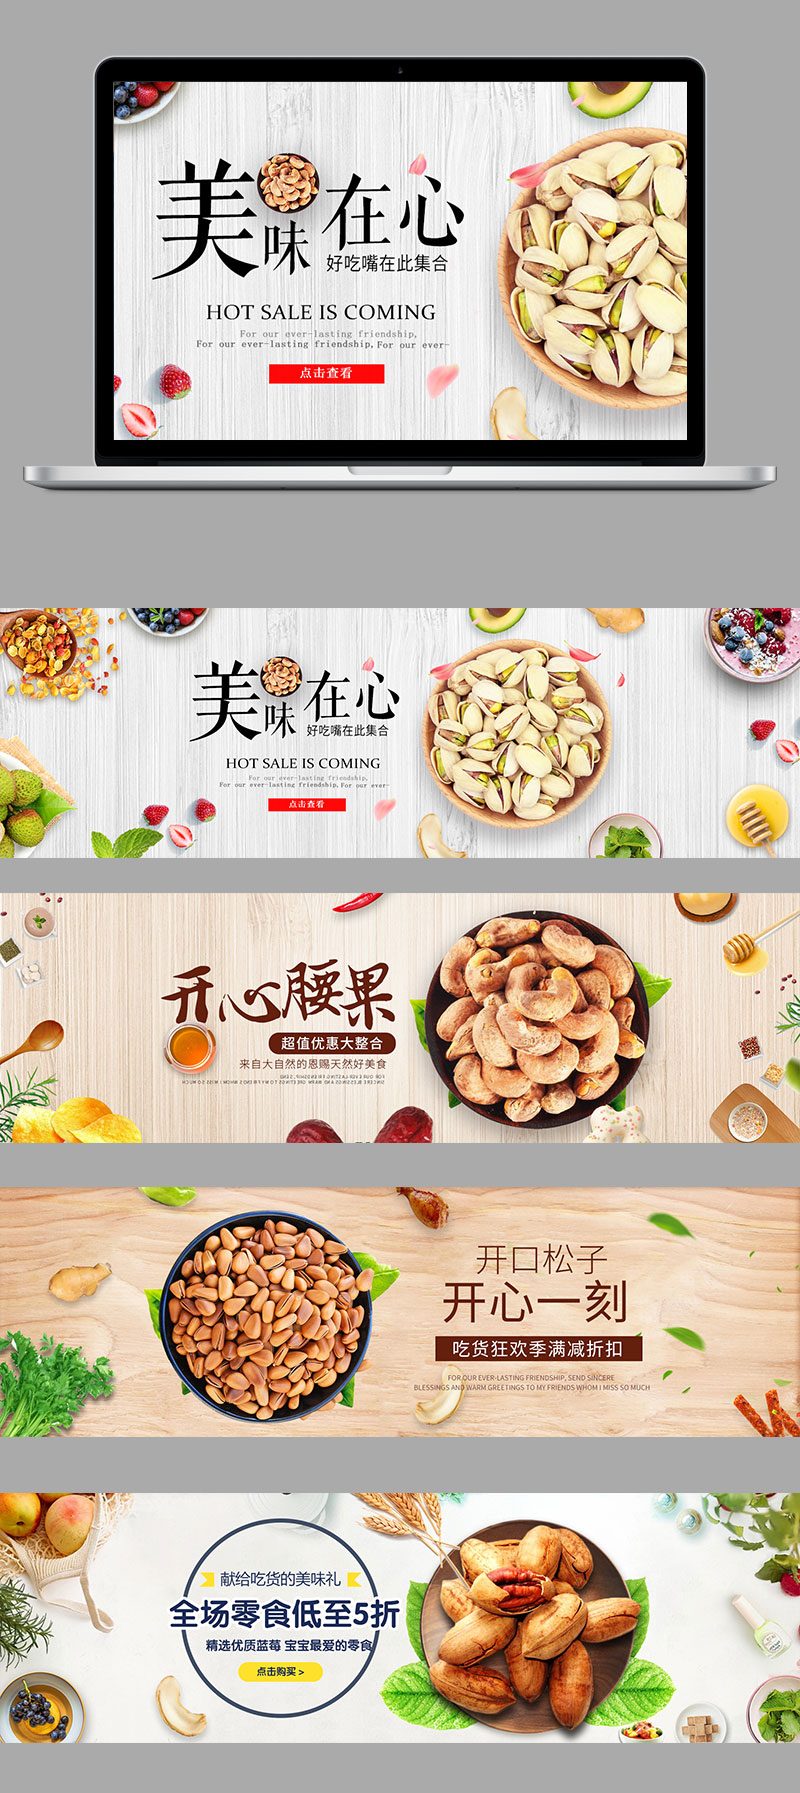 上海专业网站设计公司